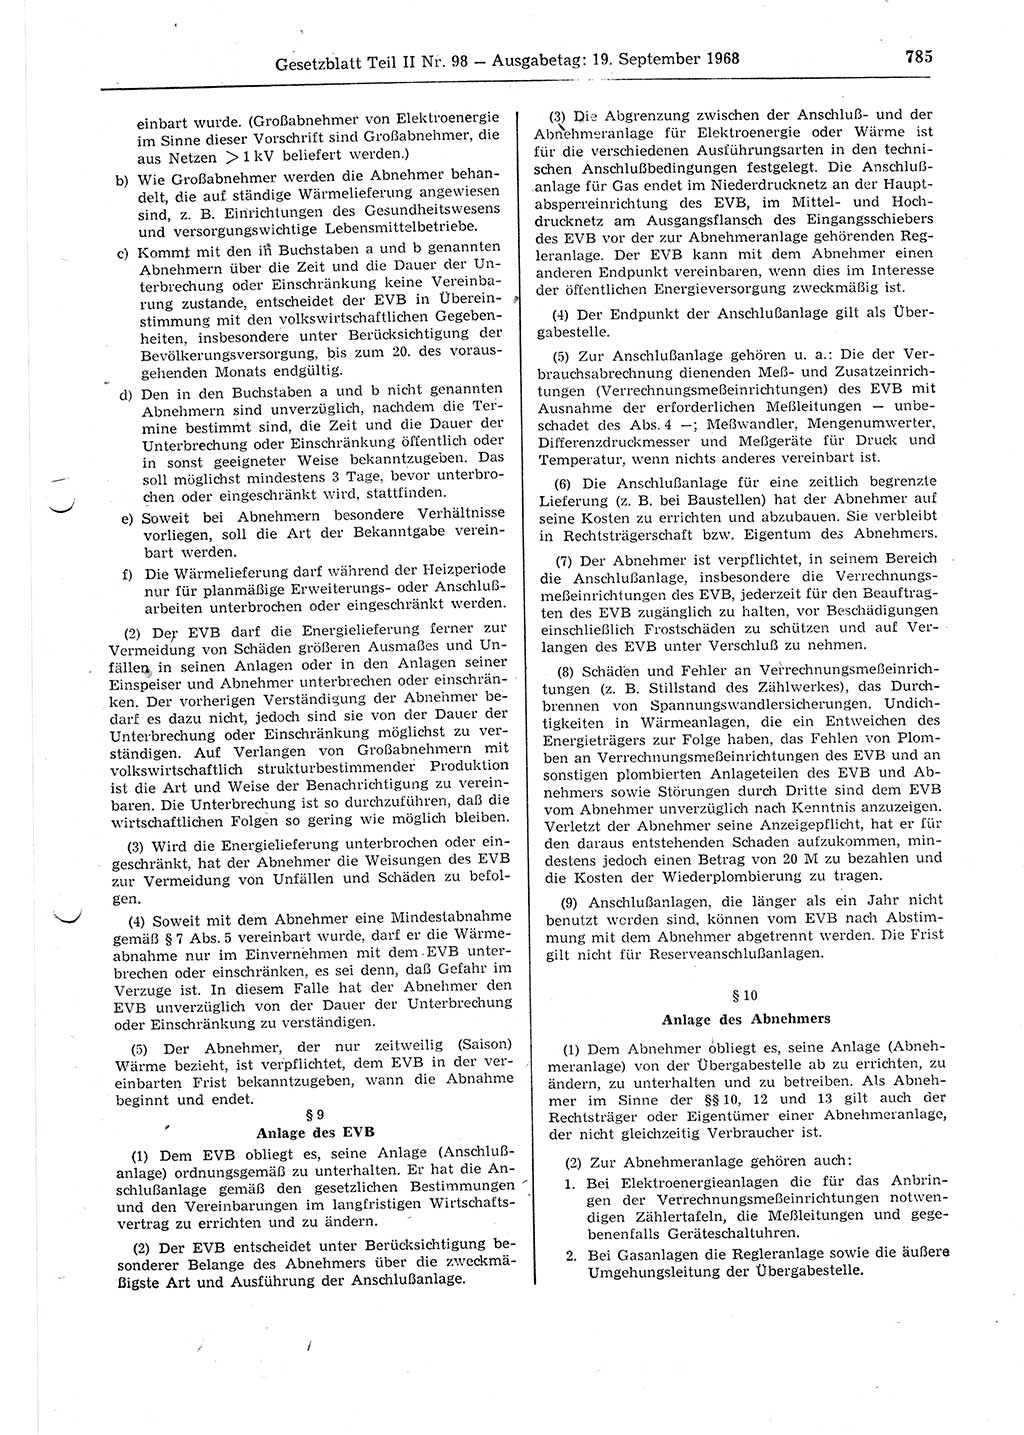 Gesetzblatt (GBl.) der Deutschen Demokratischen Republik (DDR) Teil ⅠⅠ 1968, Seite 785 (GBl. DDR ⅠⅠ 1968, S. 785)